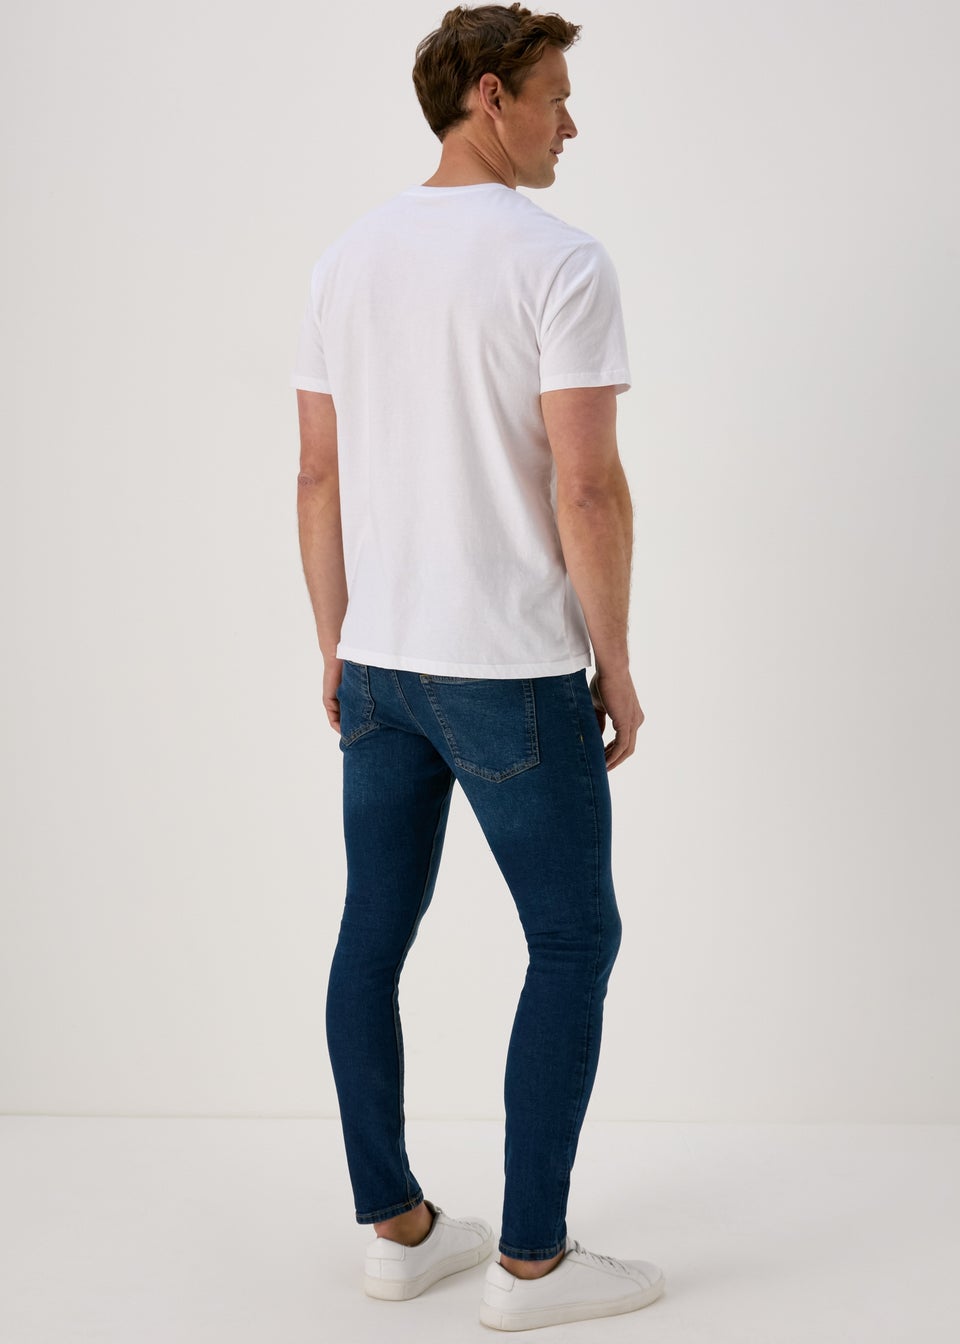 Men's Light Wash Super Skinny Jeans, Men's Clearance